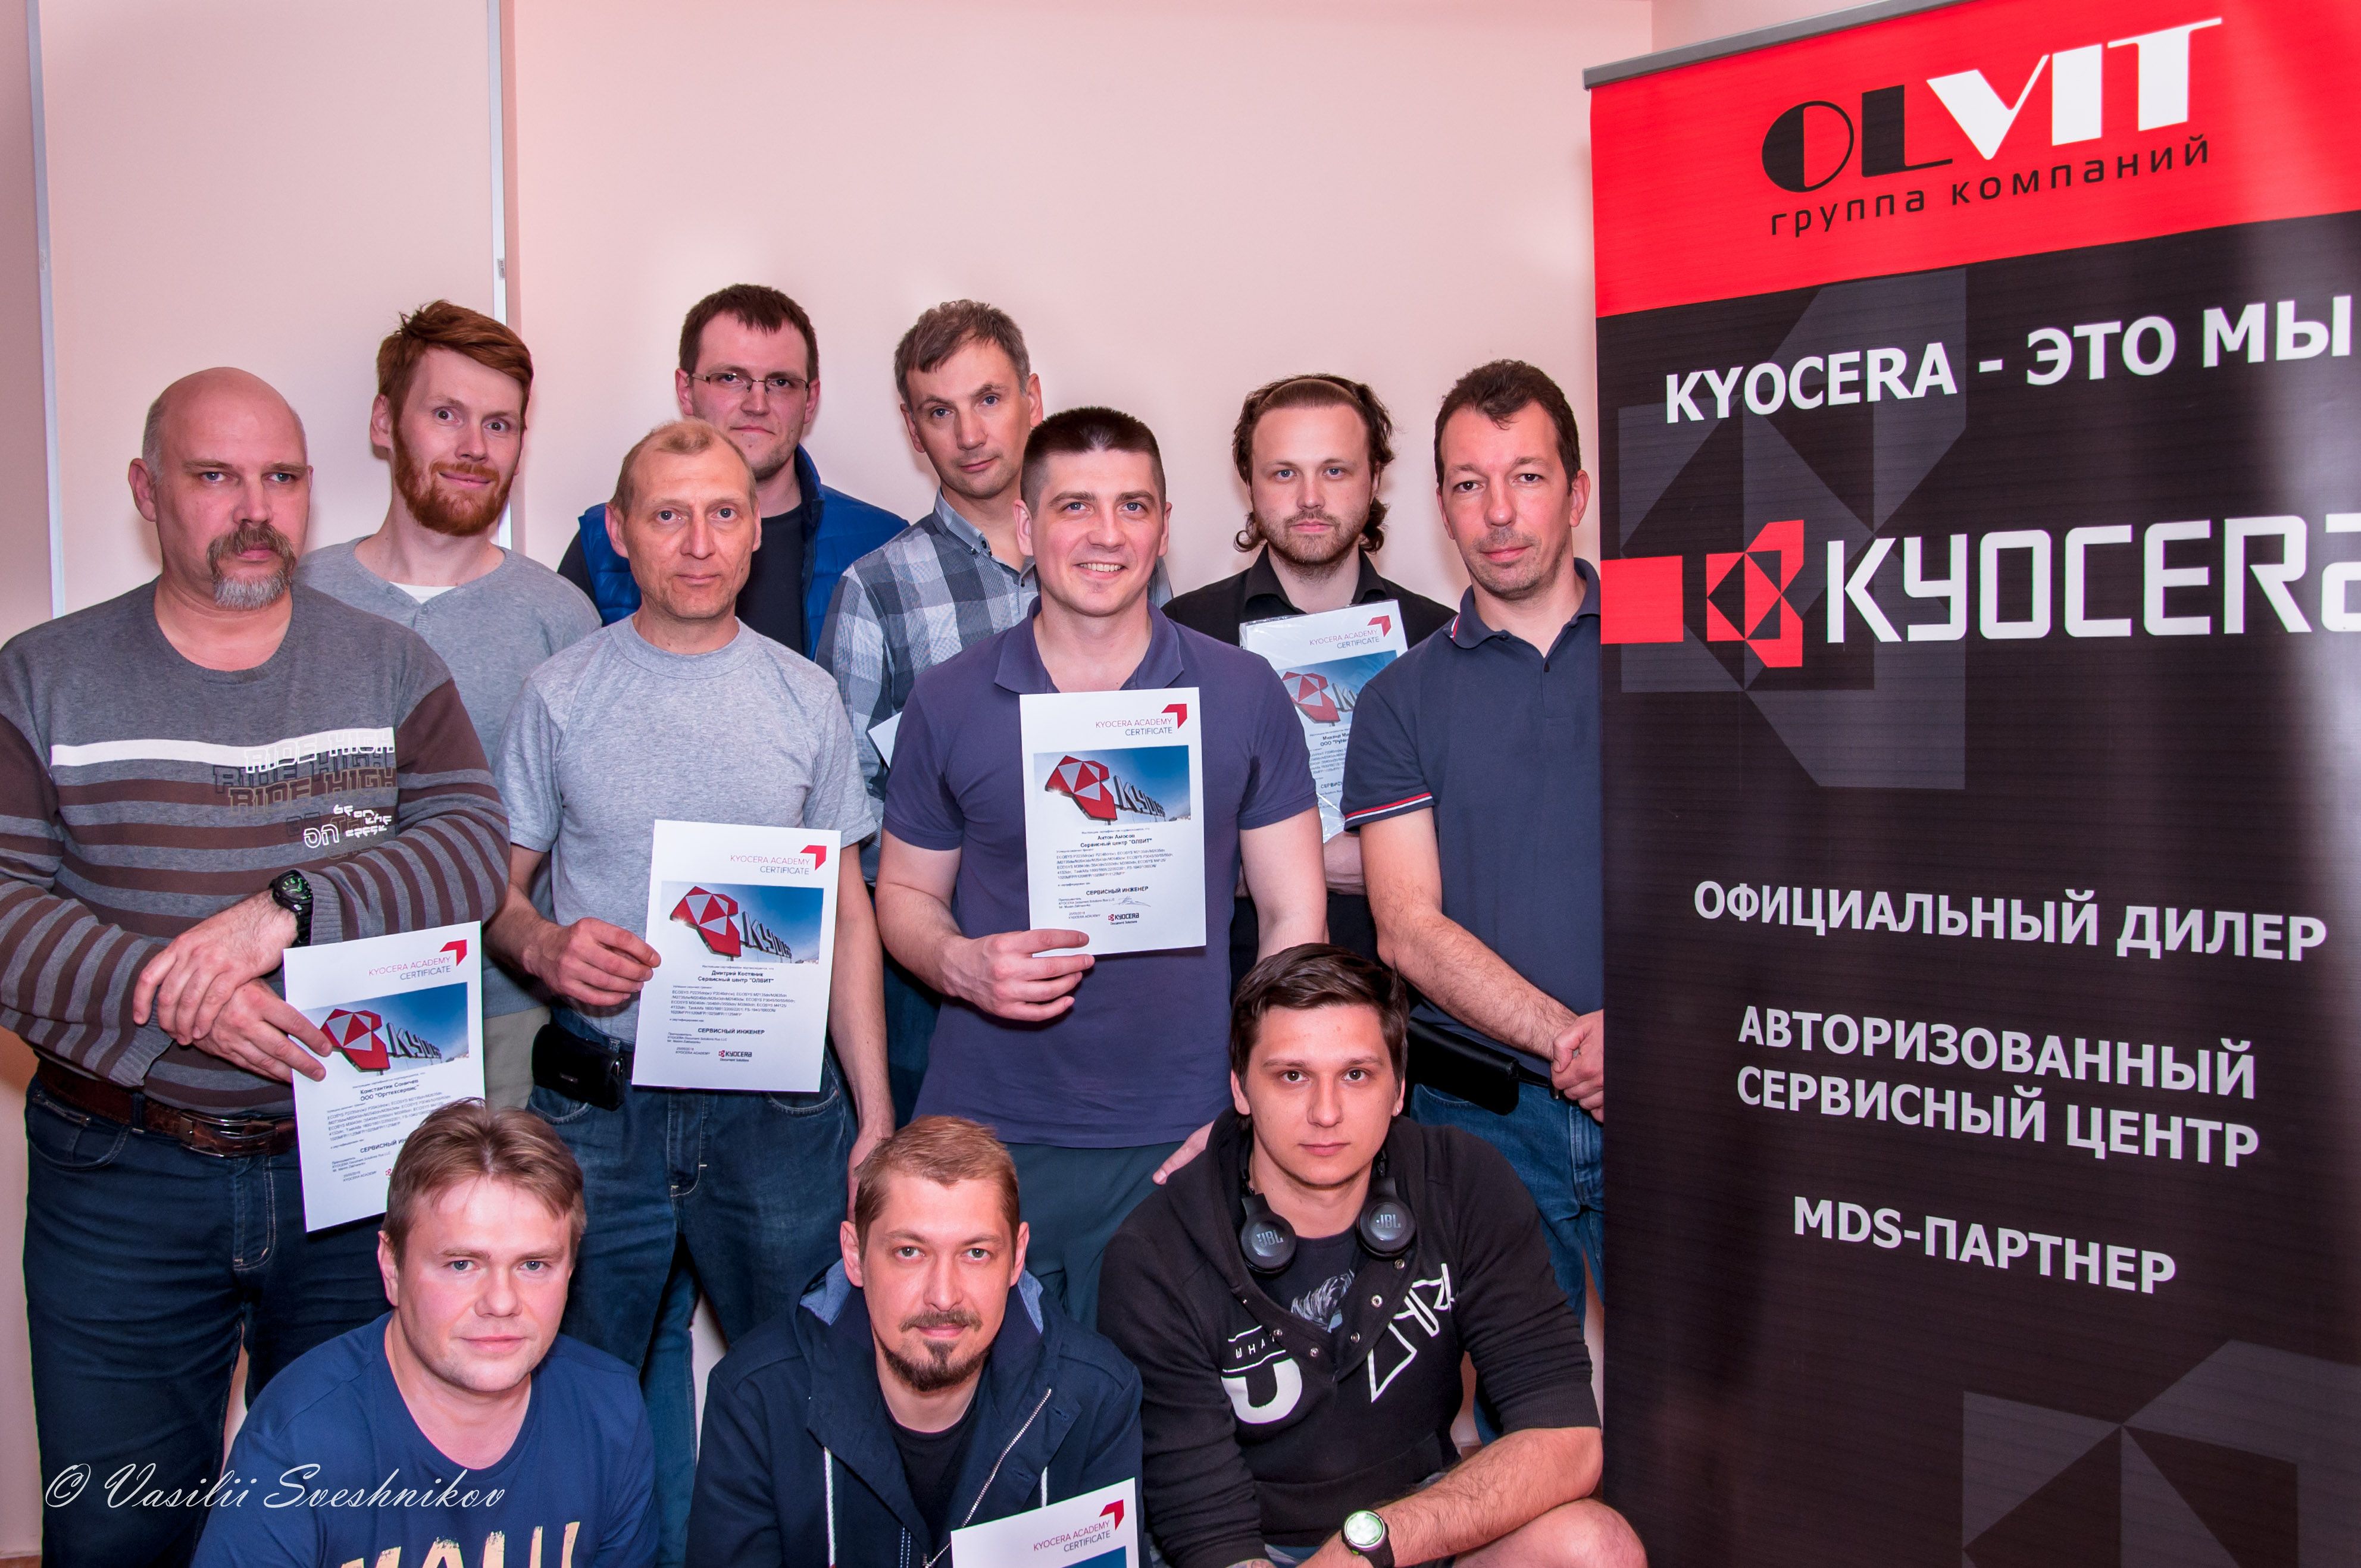 Проведение базового технического тренинга Kyocera в Санкт-Петербурге.